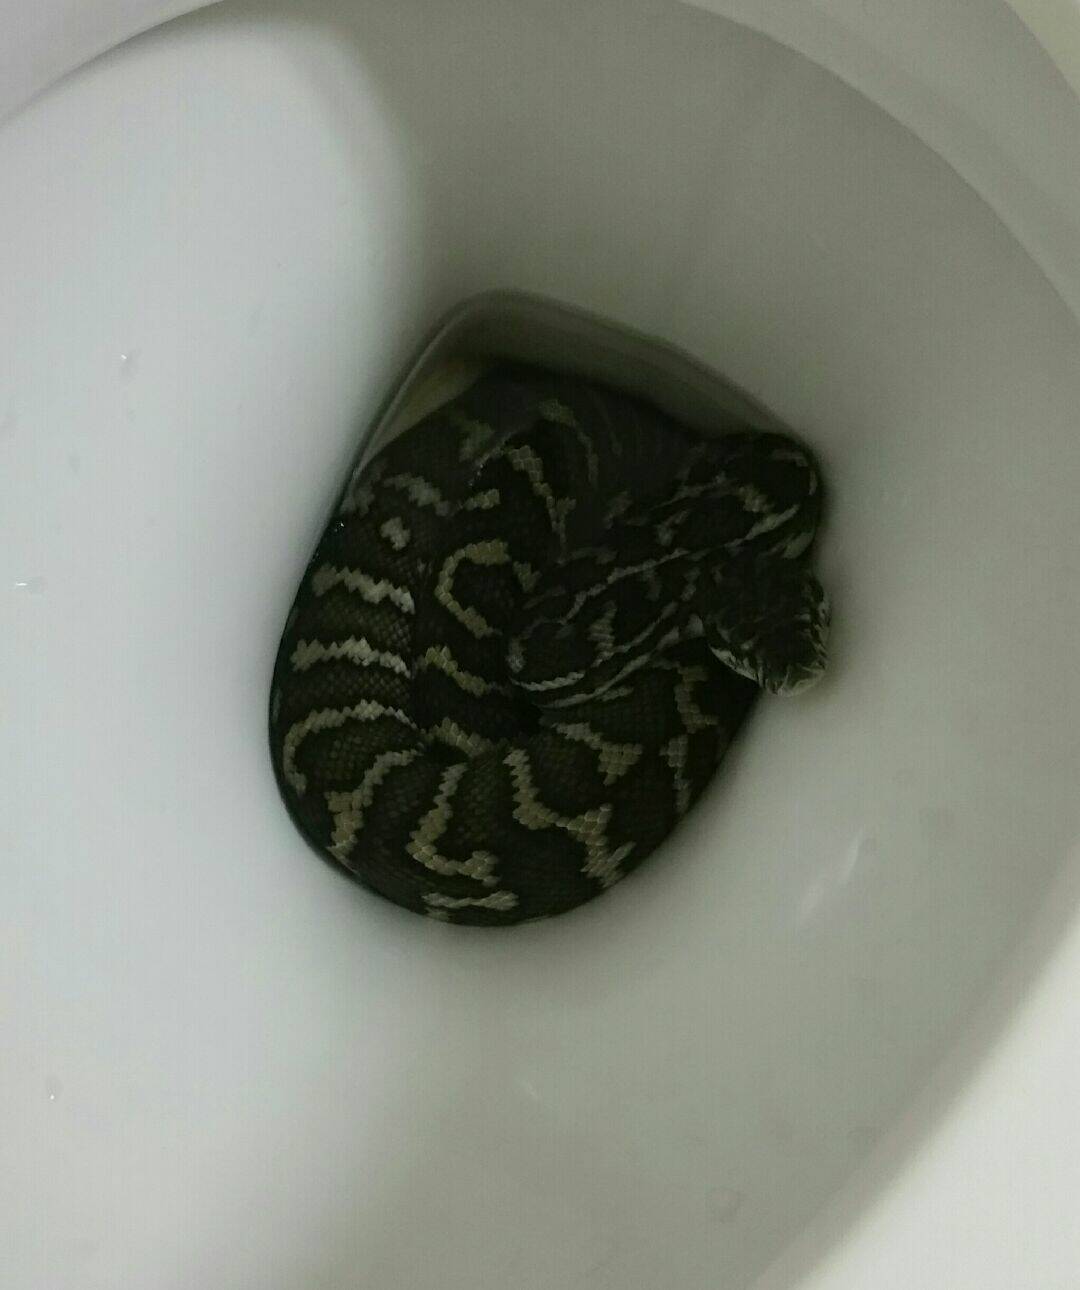 Australian woman bitten by snake in toilet